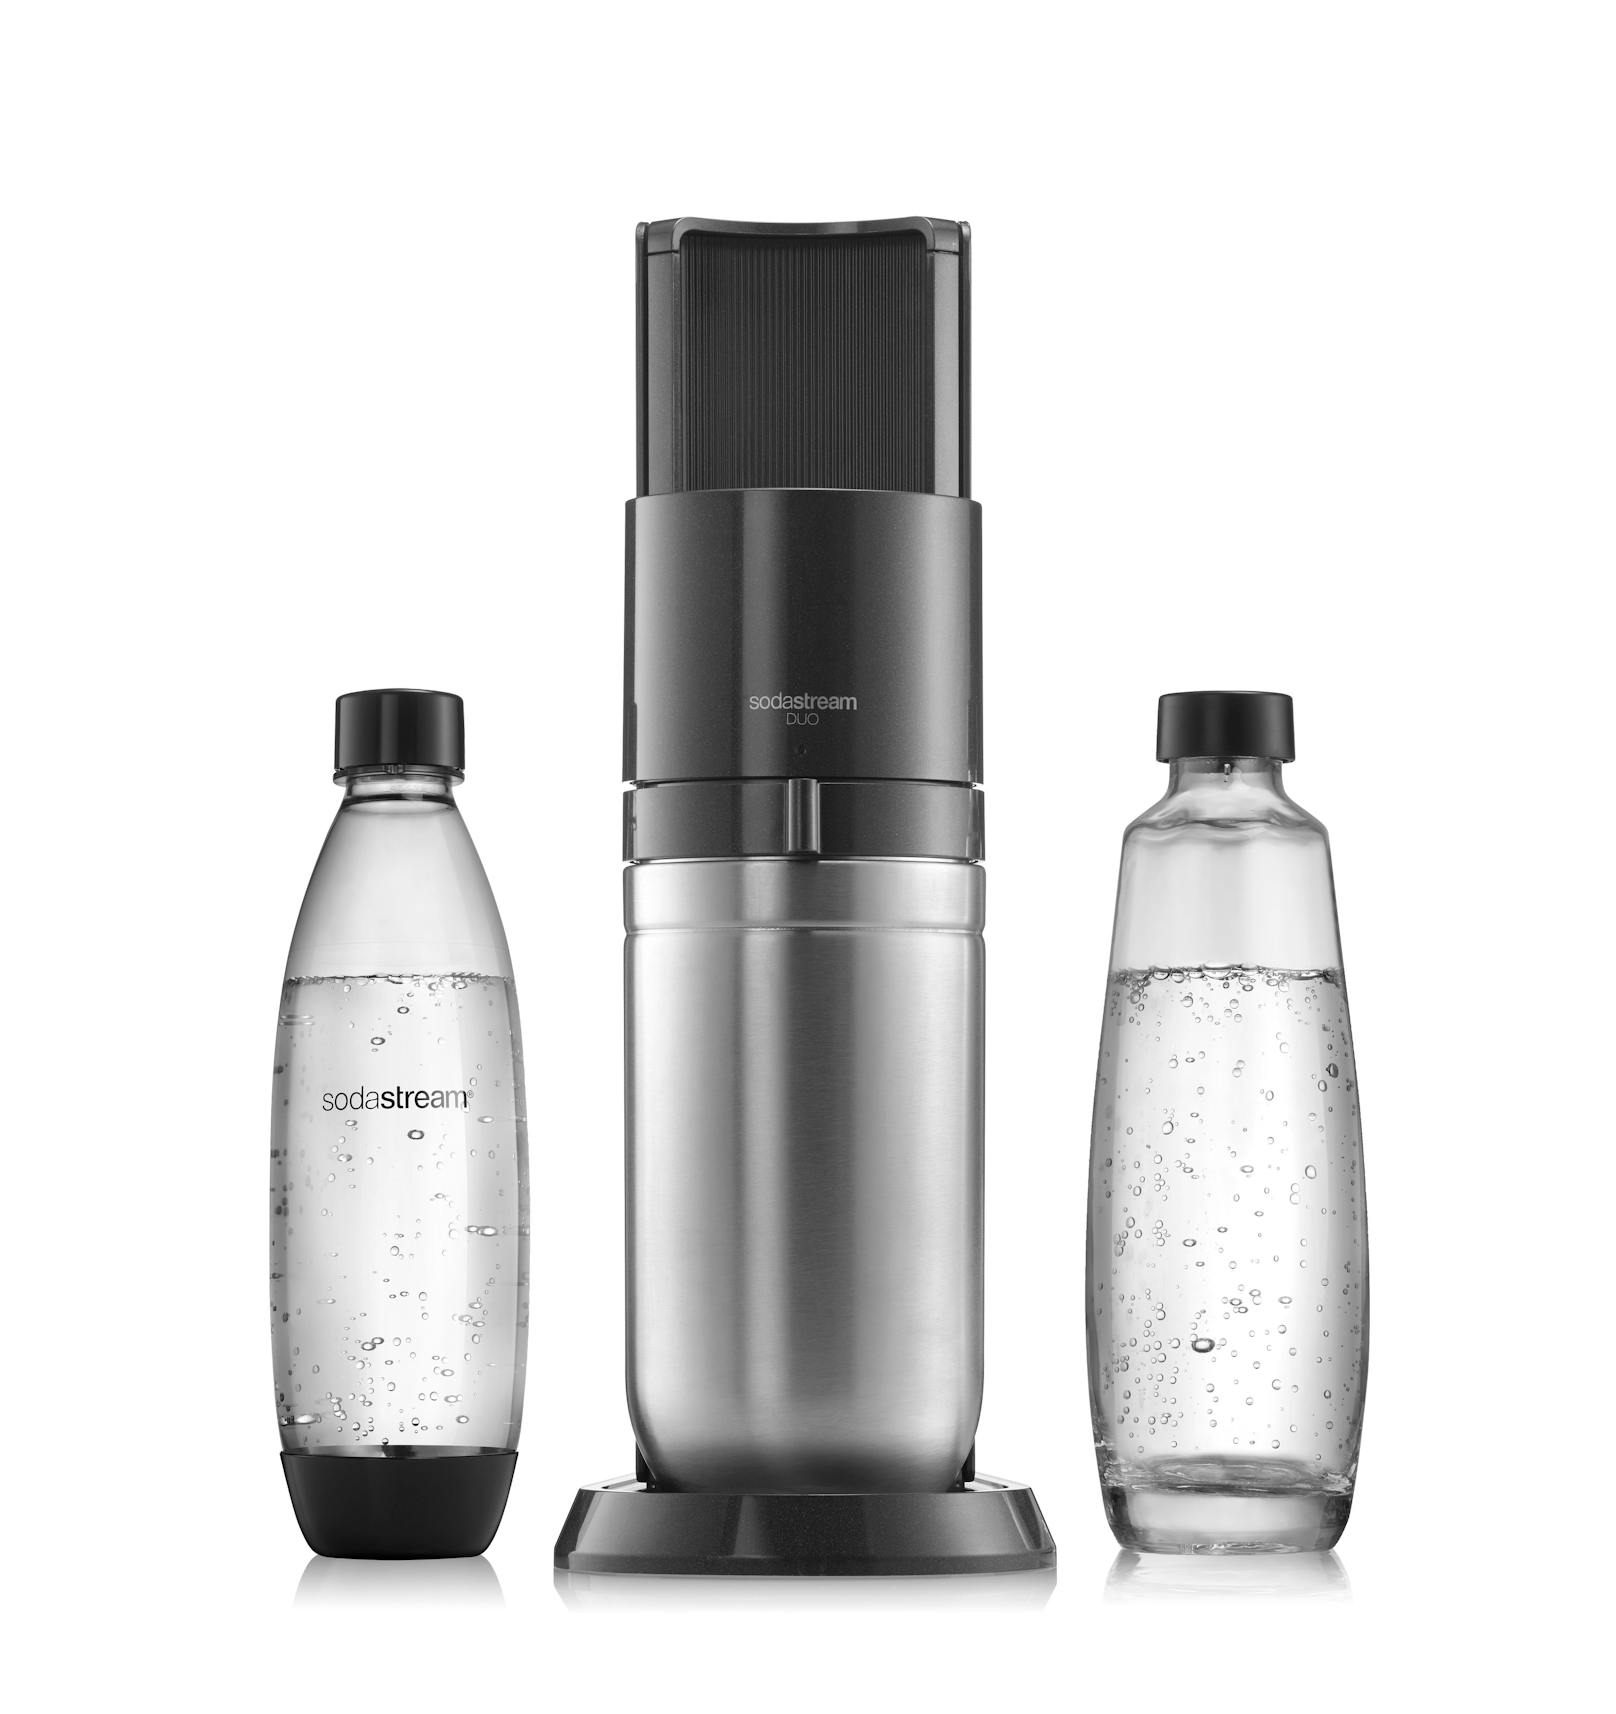 Einfach ausprobieren: Die SodaStream DUO vereint elegantes Design und höchst bequemes Sprudeln – als Blickfang in jeder Küche.